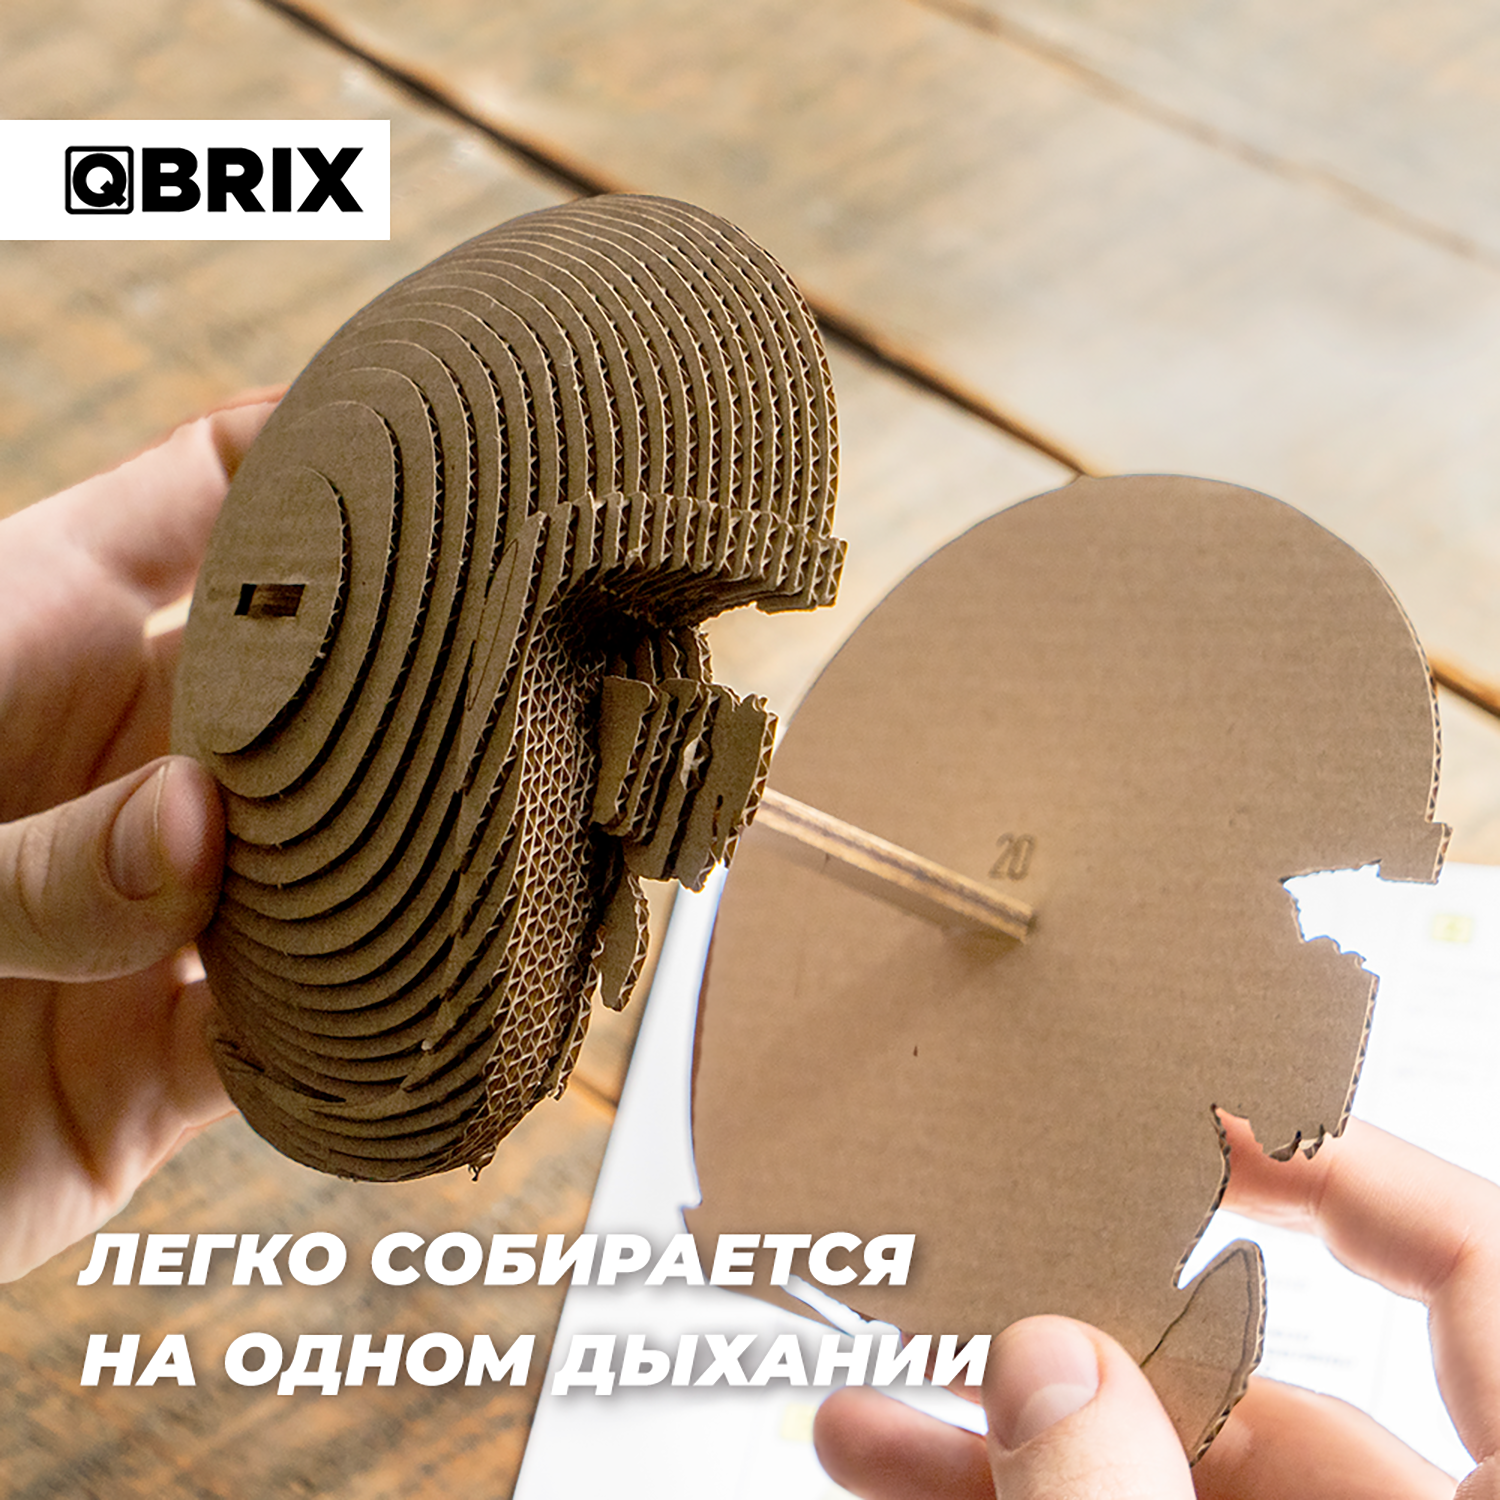 Конструктор QBRIX 3D картонный Бульдог Органайзер 20005 20005 - фото 5